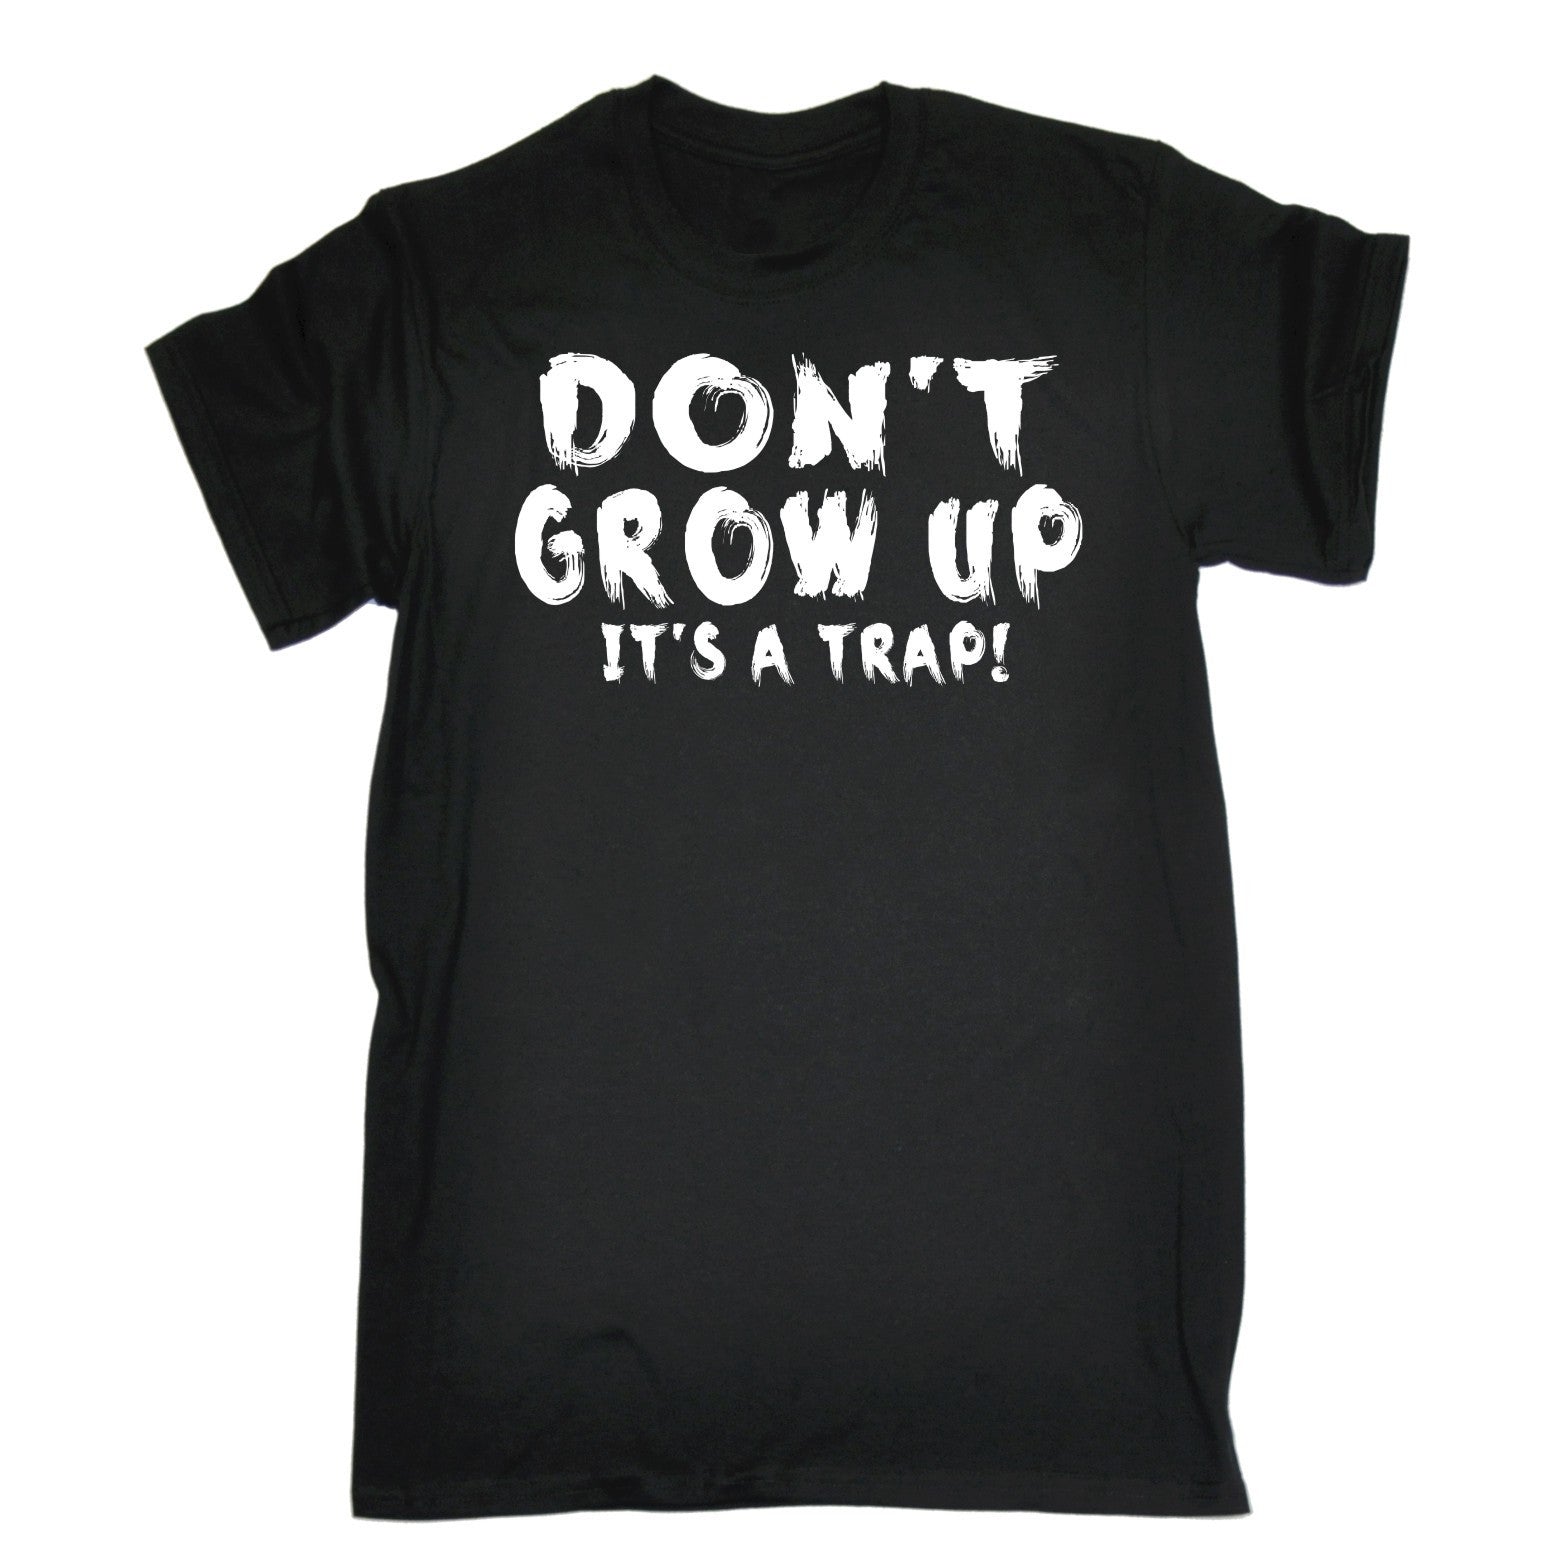 Buy 123t Men's Don't Grow Up It's A Trap! Funny T-Shirt at 123t UK - T ...